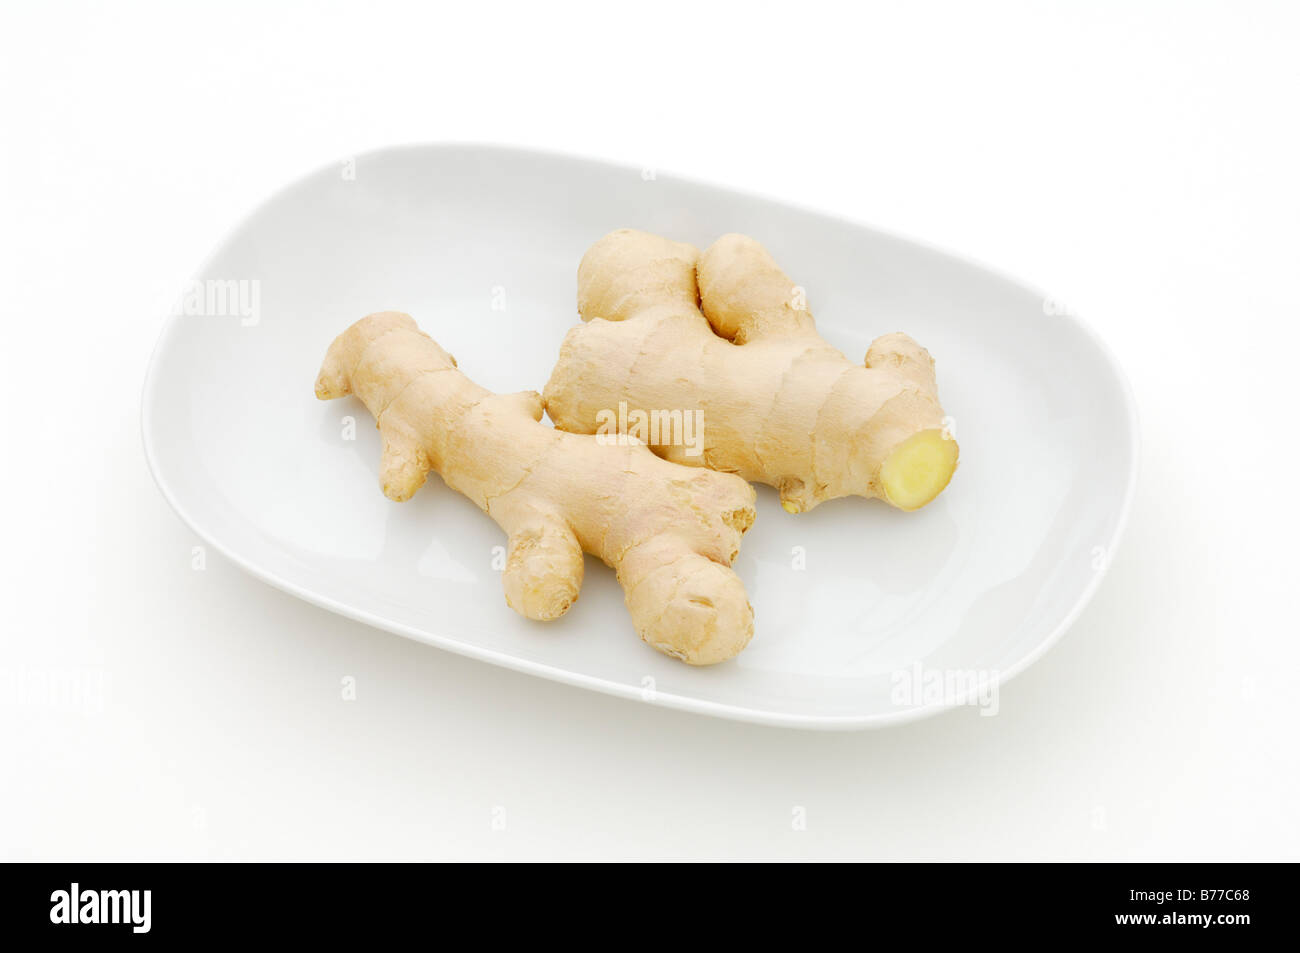 Ginger rhizome (Zingiberaceae) on a plate Stock Photo